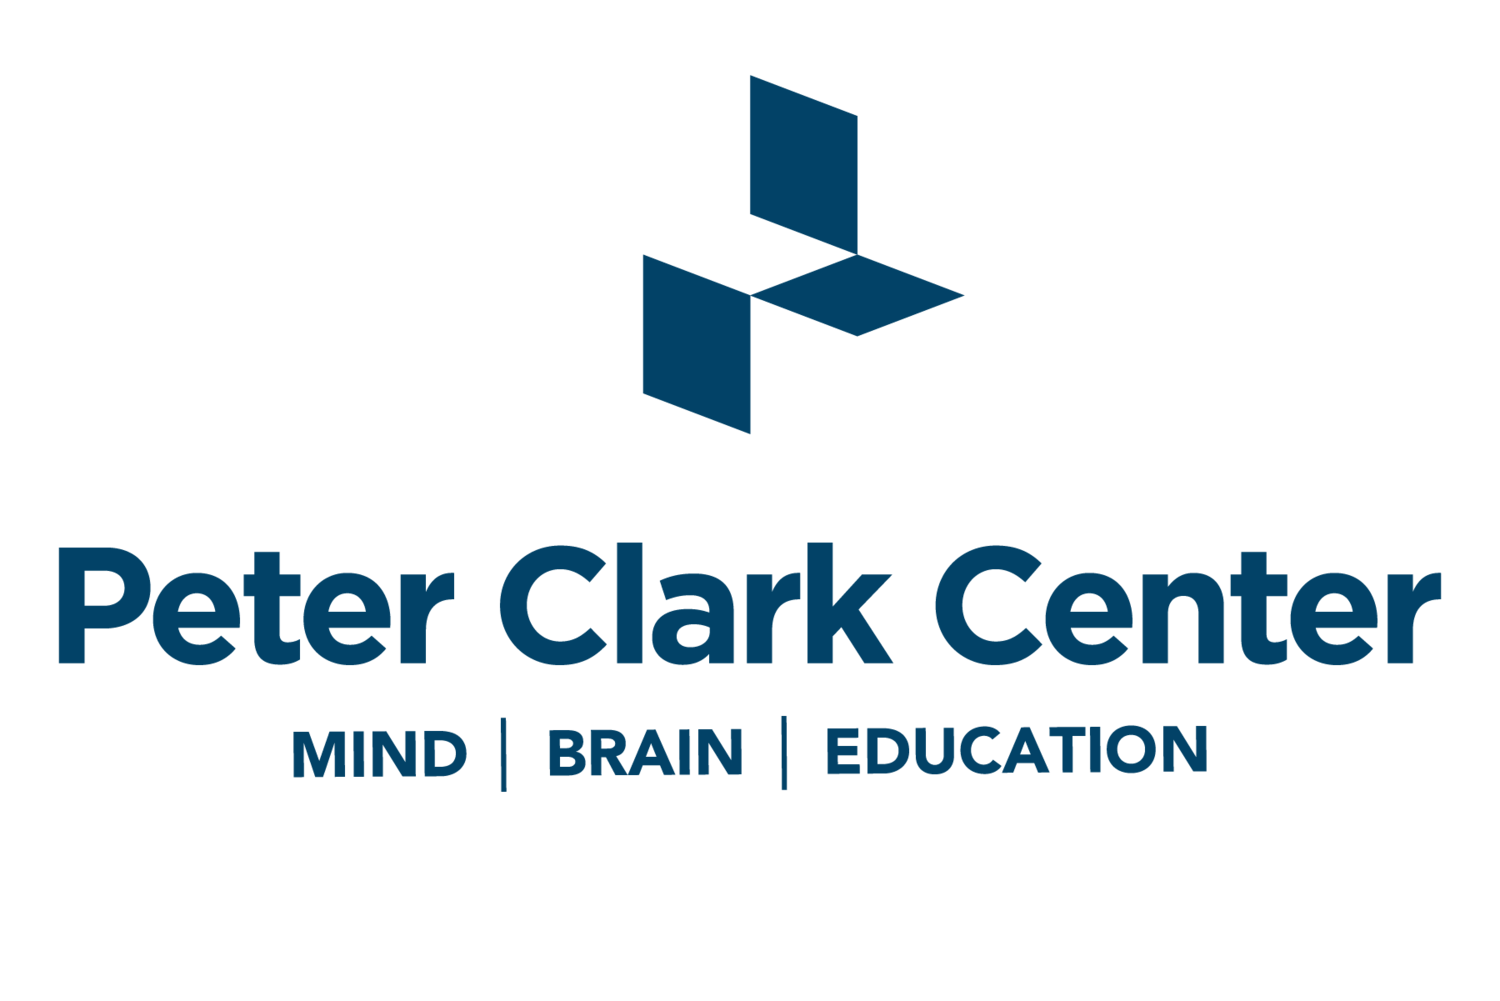 The Peter Clark Center